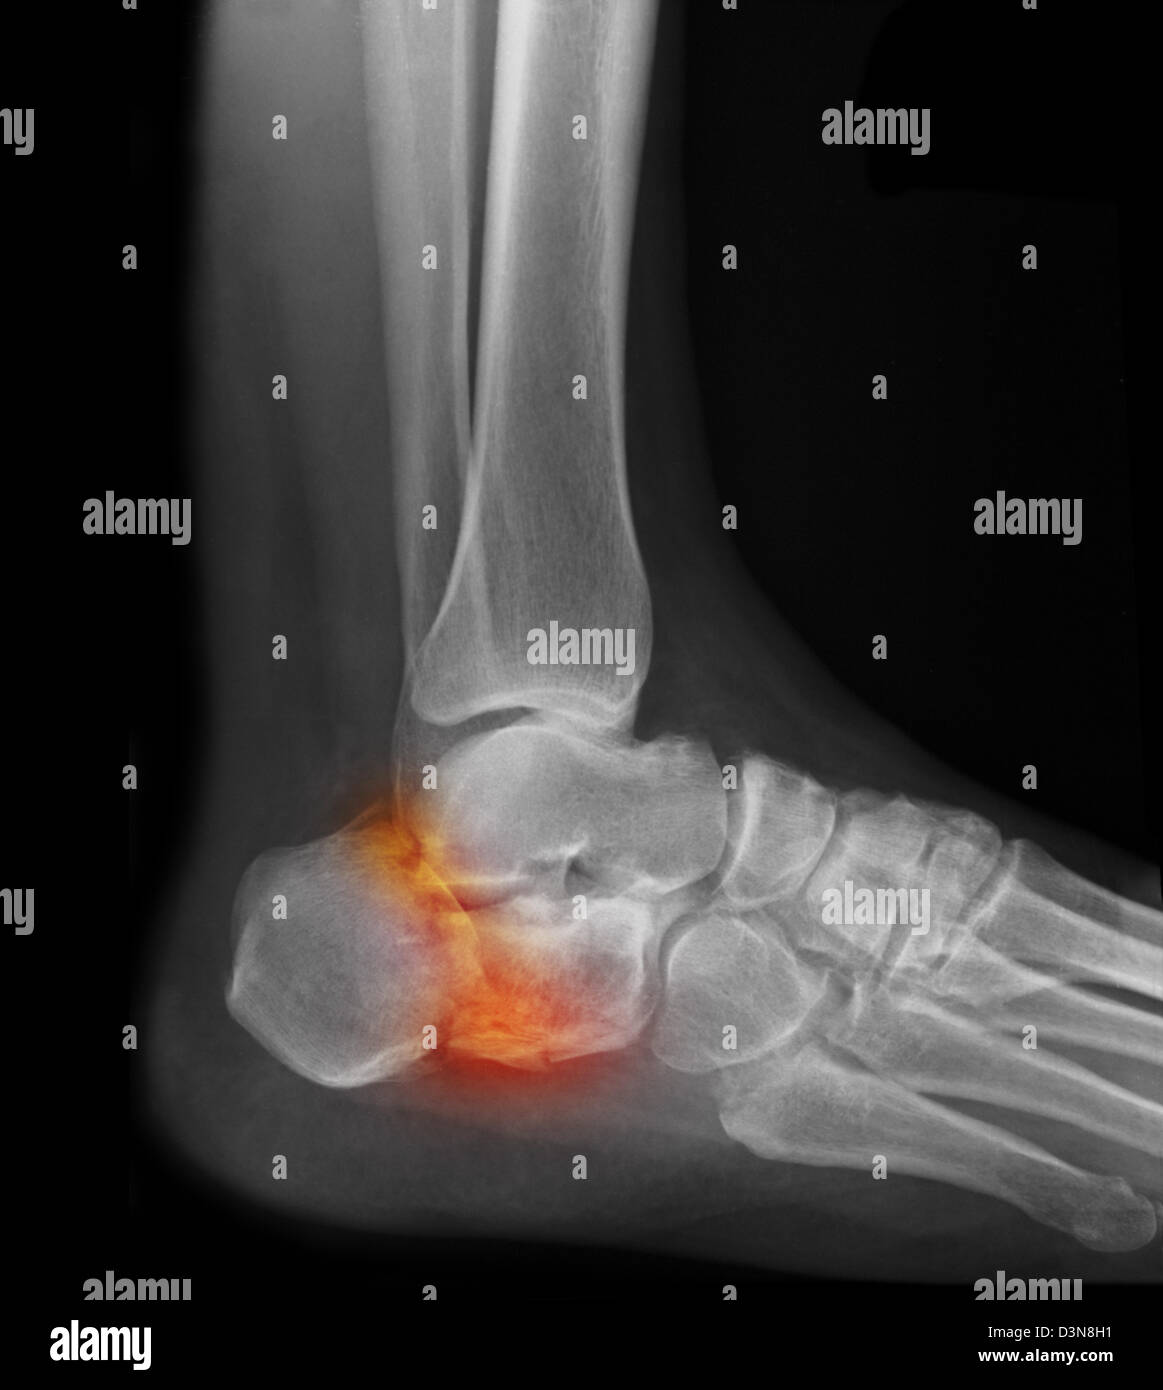 Radiographie d'un pied d'homme montrant une fracture du talon Photo Stock -  Alamy